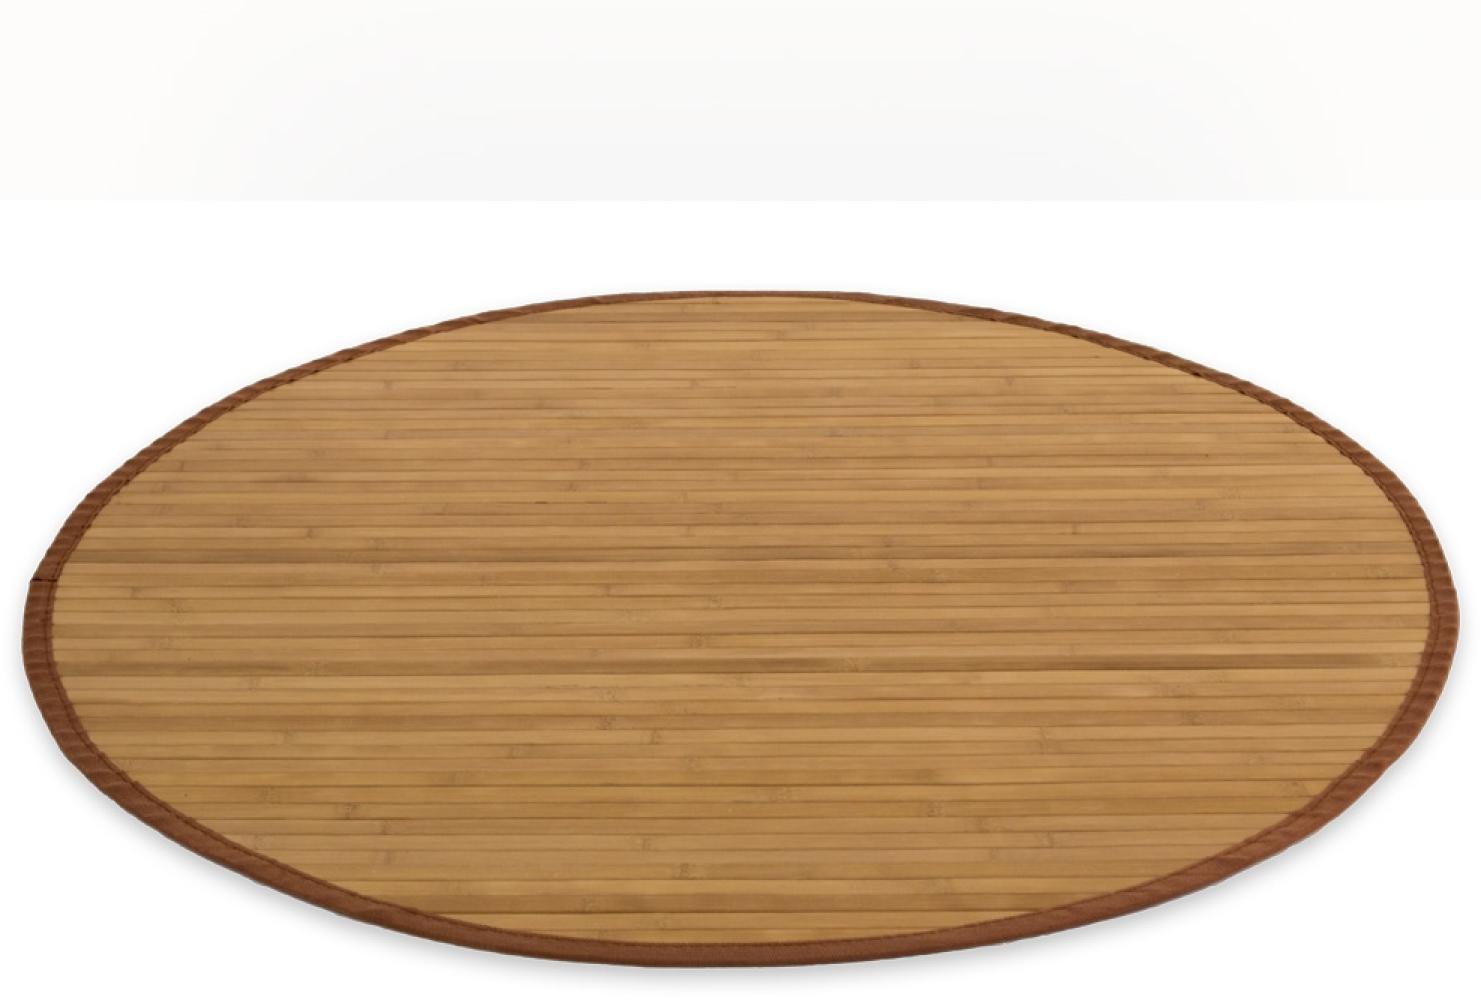 Homestyle4u Teppich, rund, Bambus braun, Ø 180 cm Bild 1